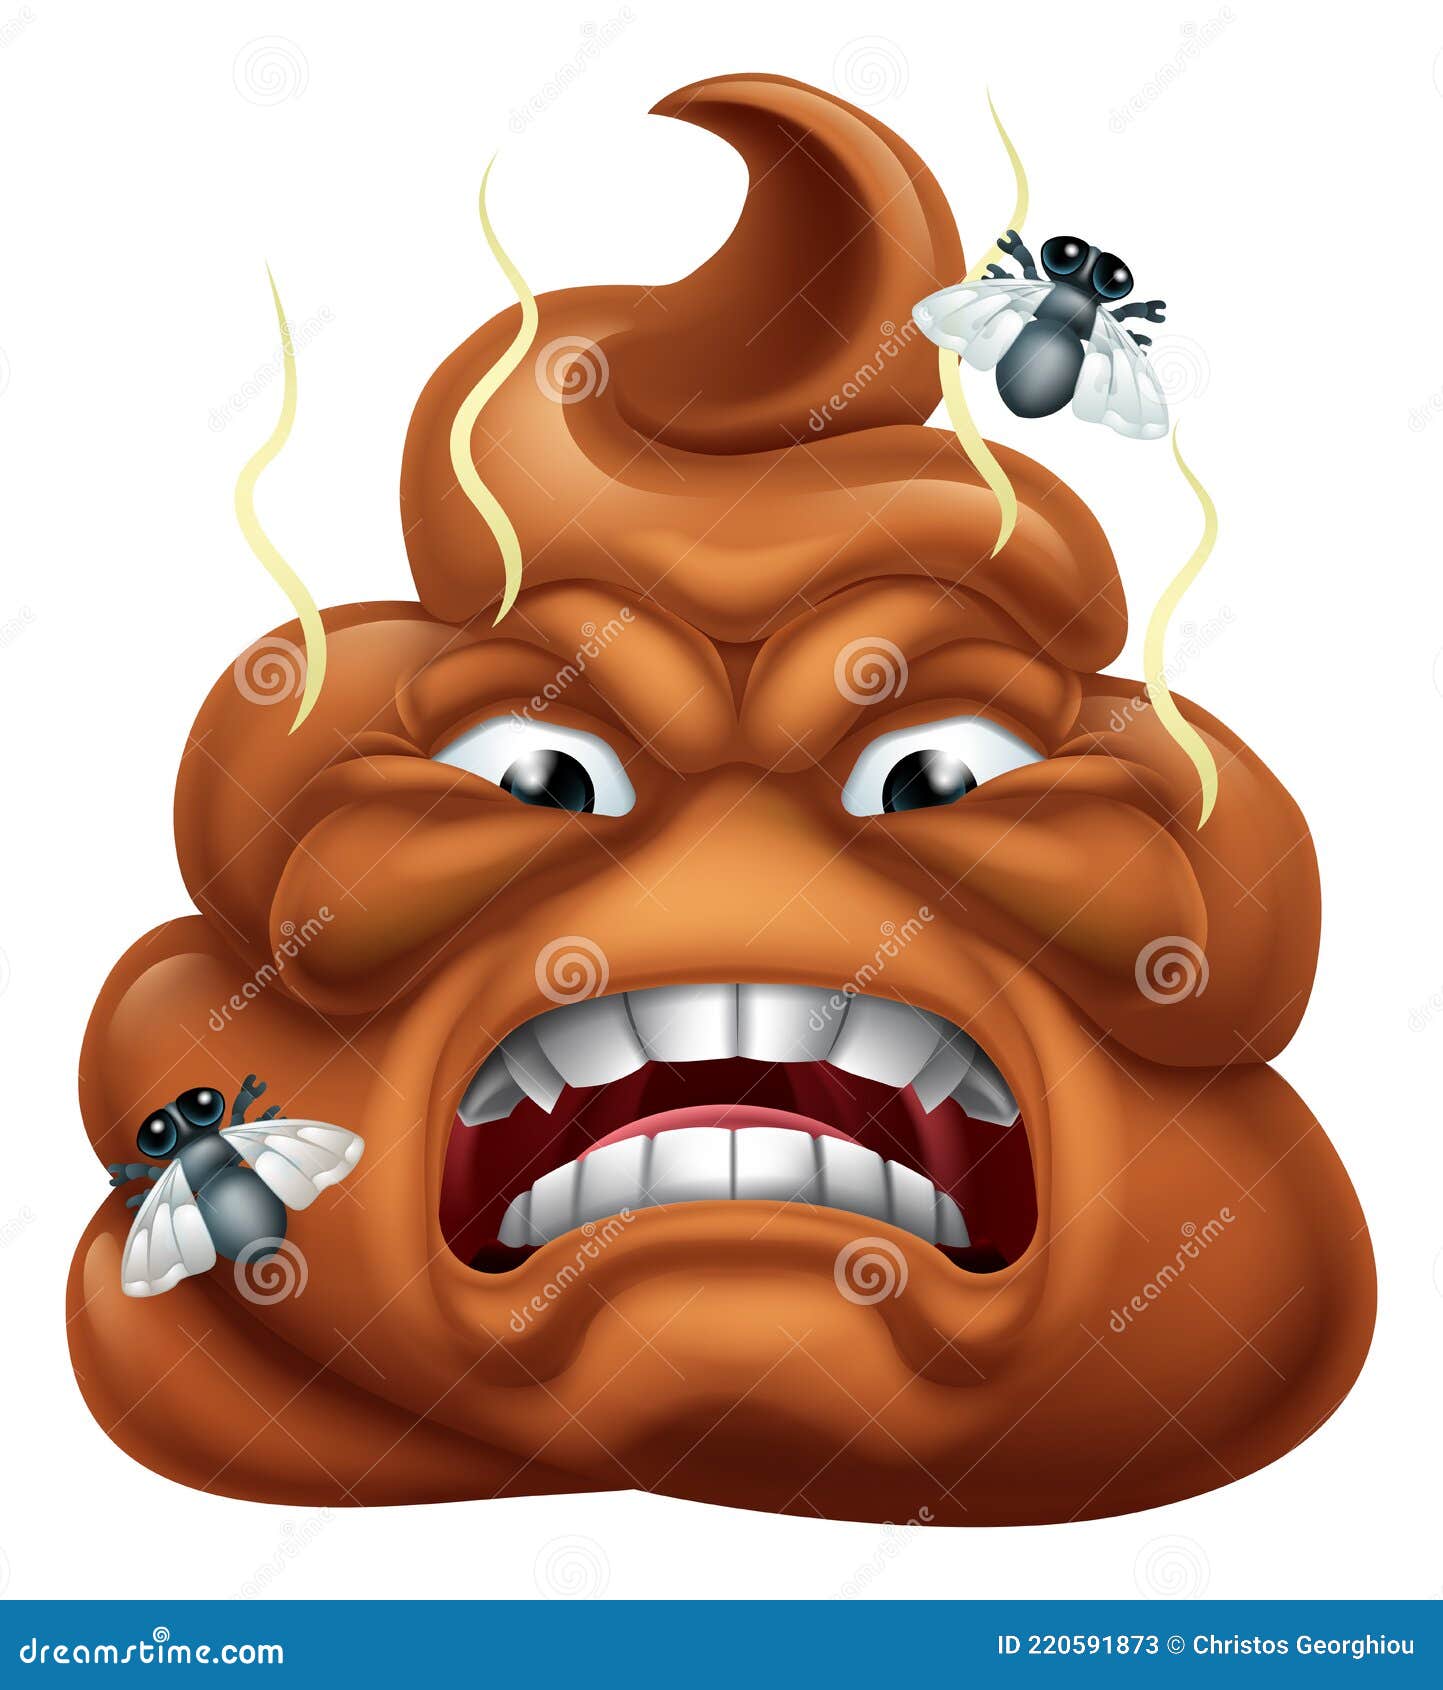 angry mad dislike hating poop poo emoticon emoji